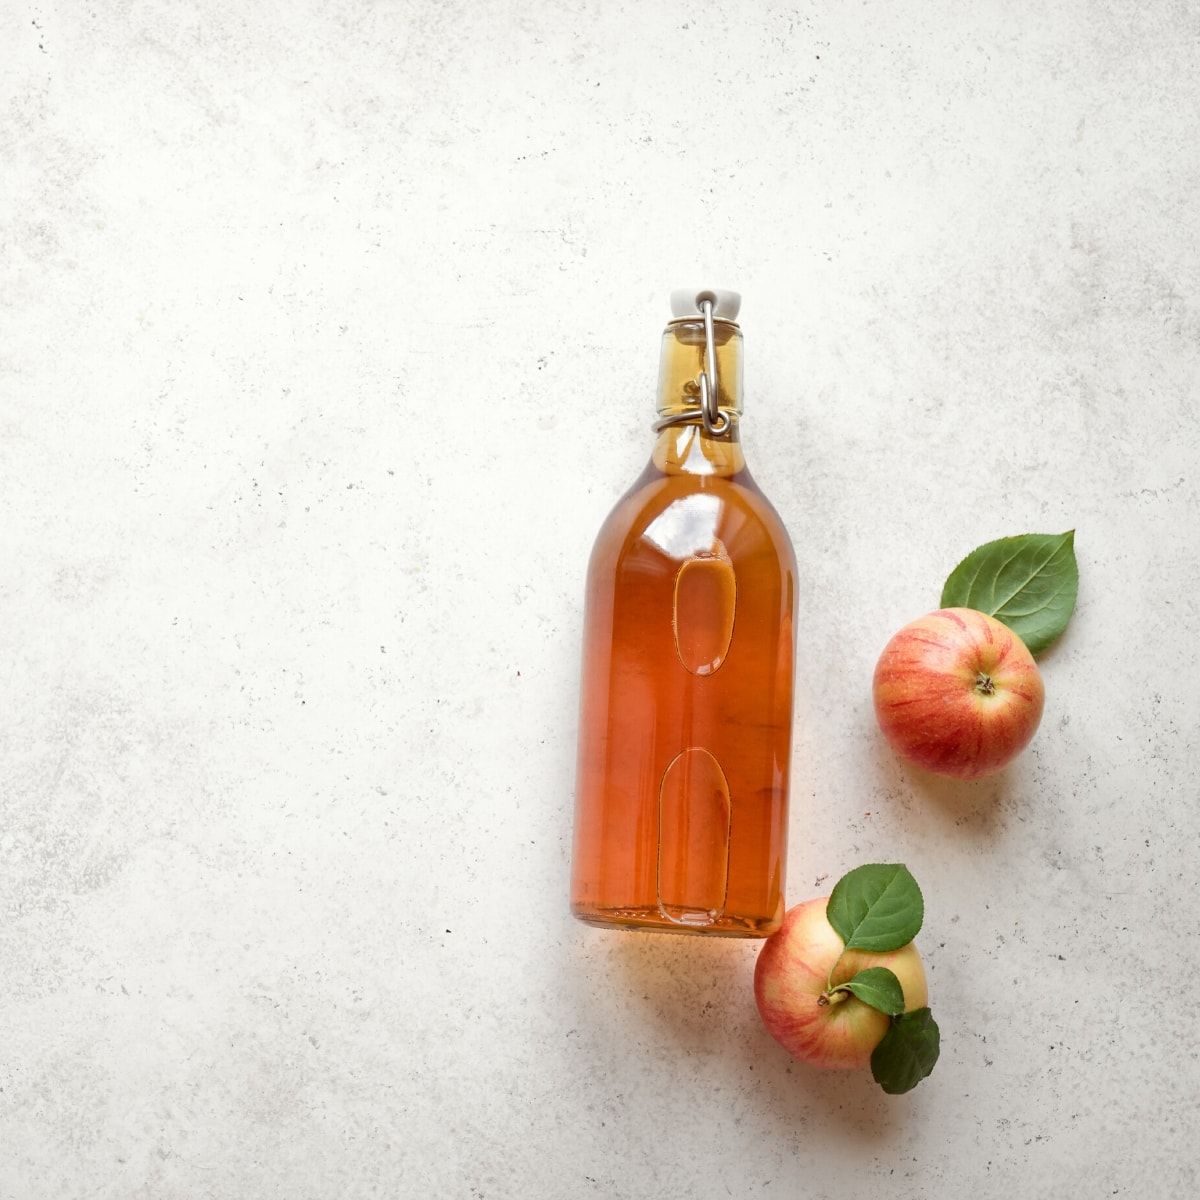 A clear glass bottle of apple cider vinegar.